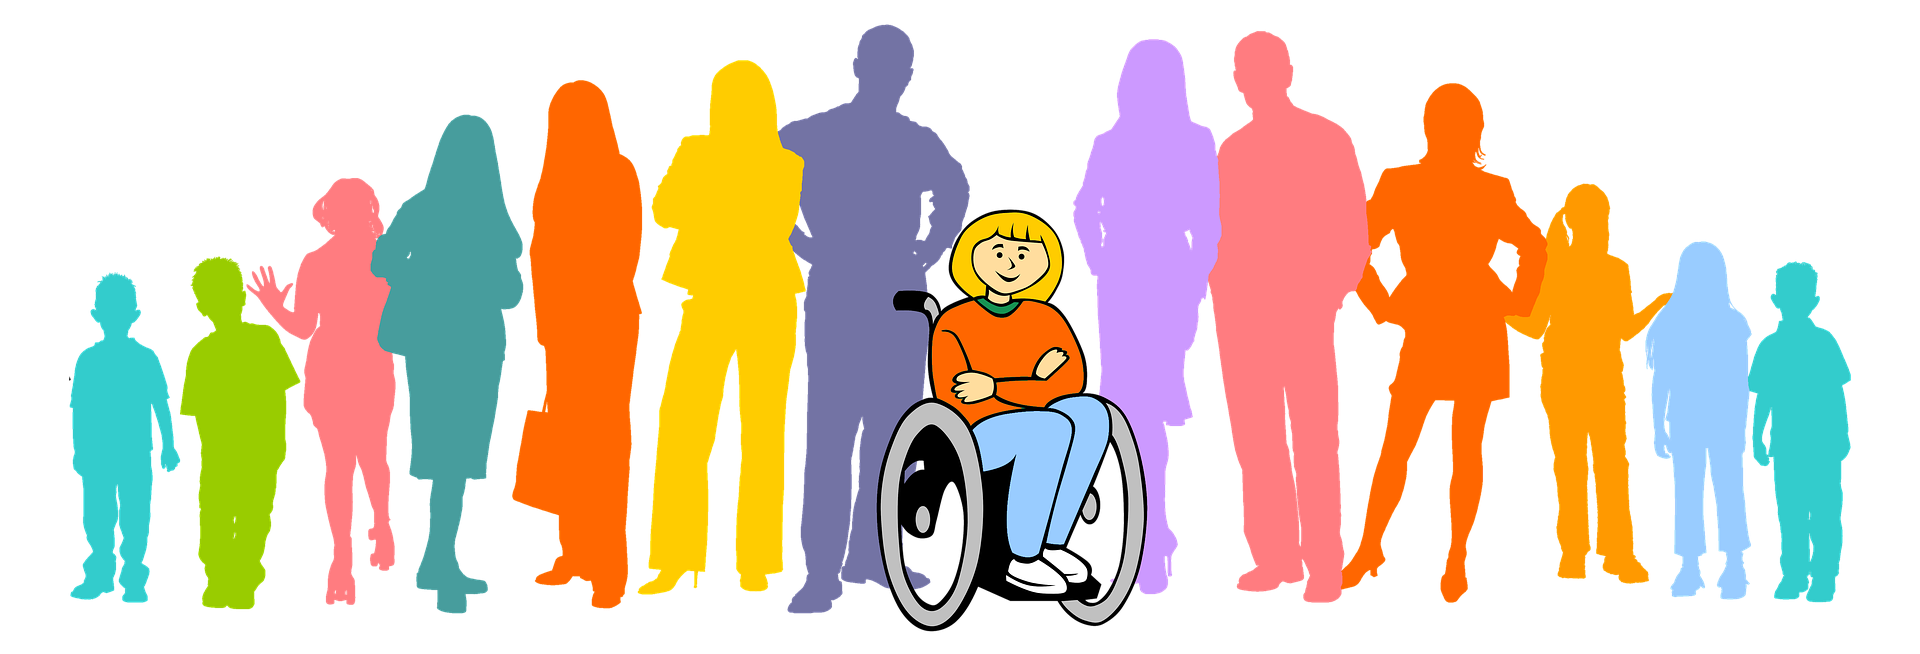 Представитель группы инвалидов. Люди с ограниченными возможностями картинки. Социализация людей с инвалидностью. Люди с ОВЗ. Общество инвалидов.